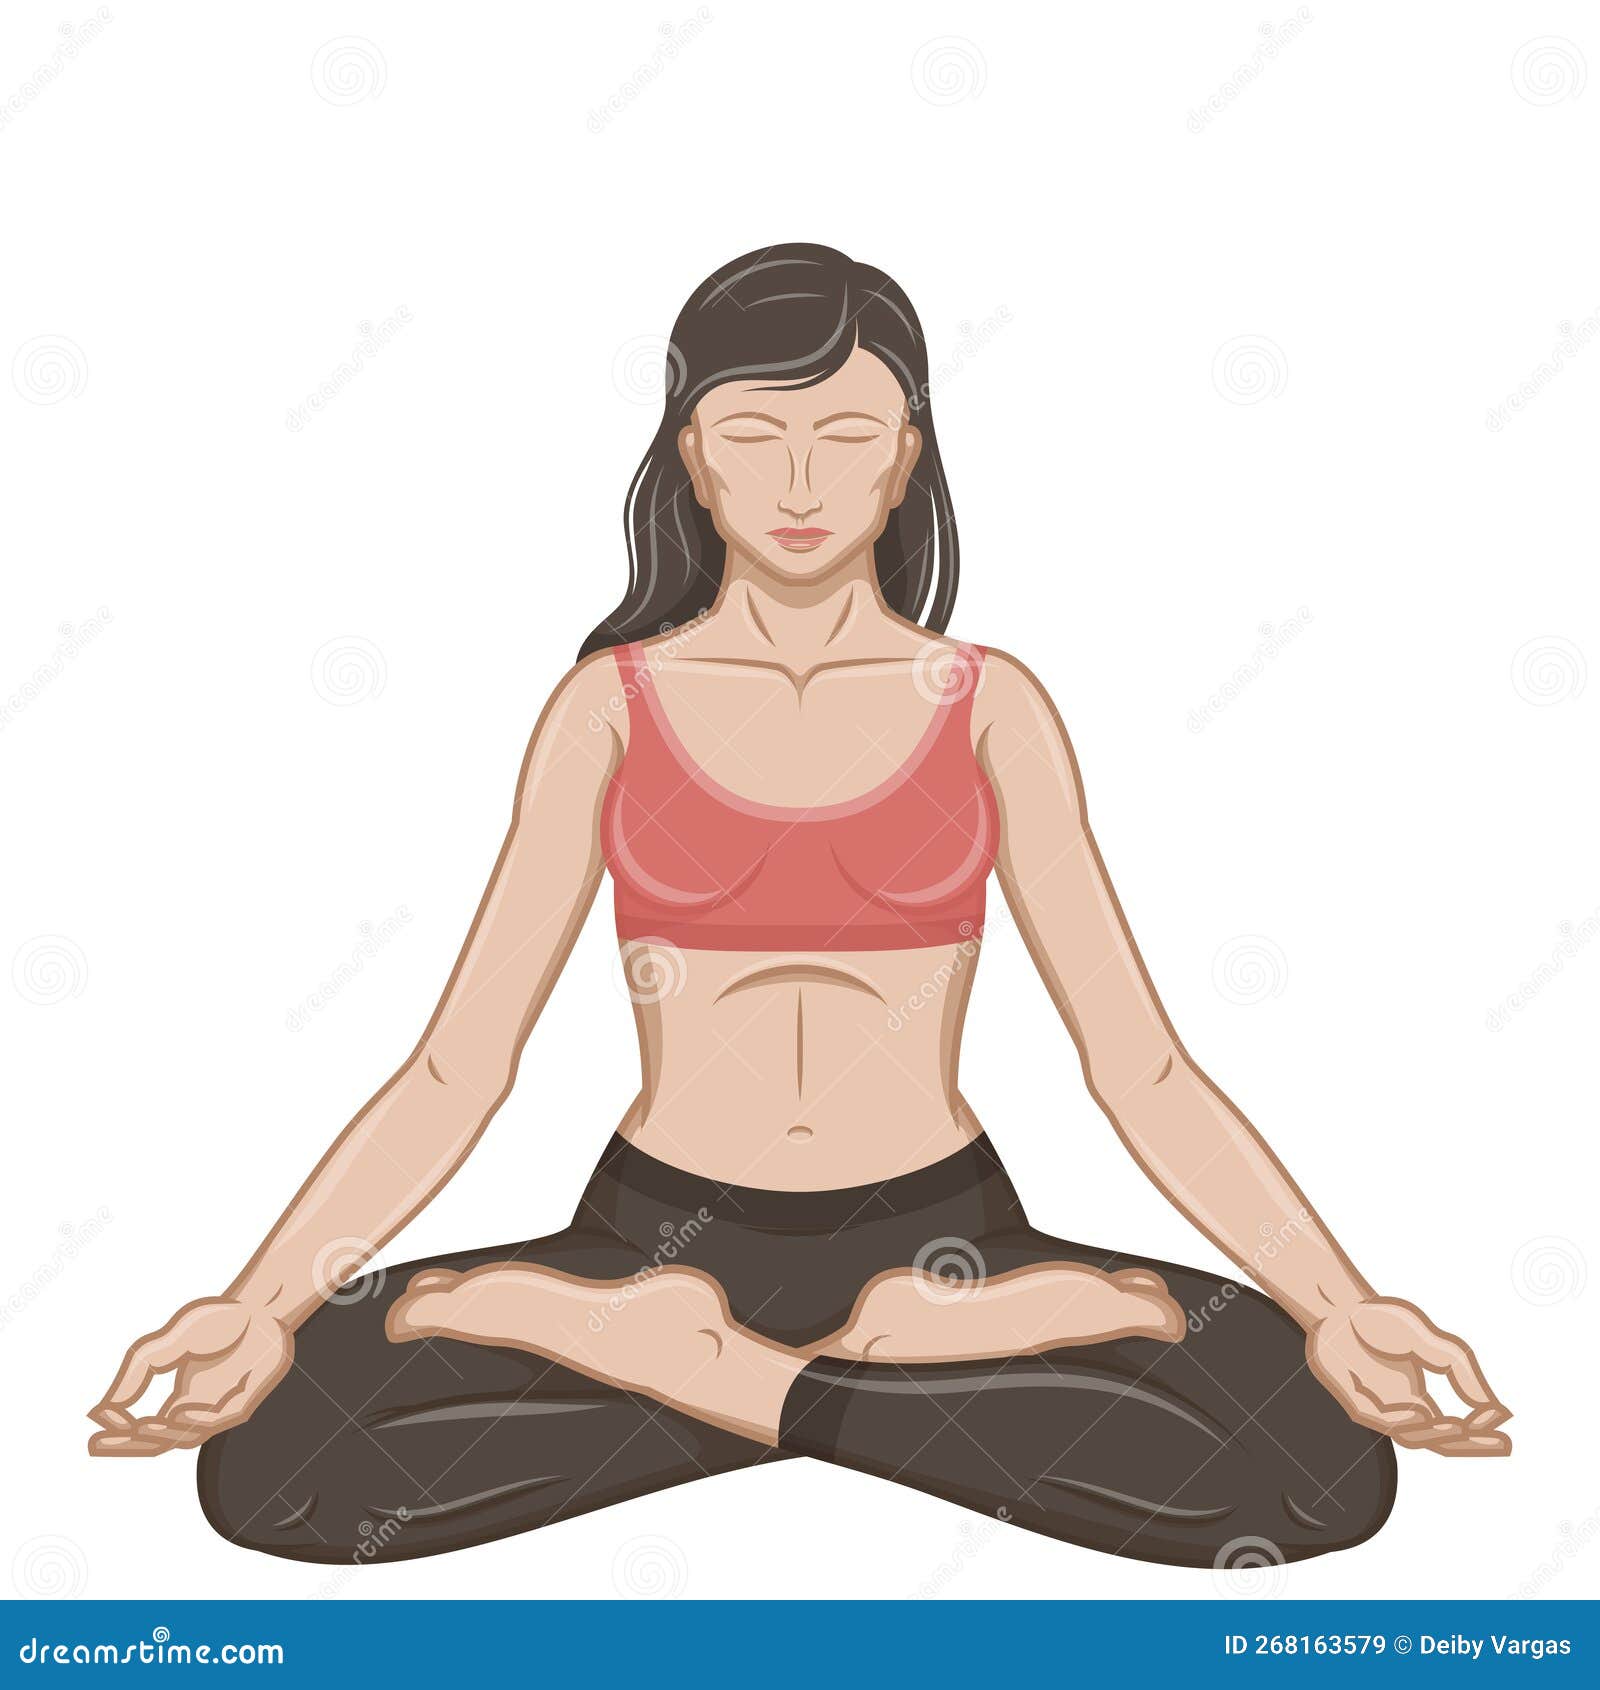 Desenho Vetorial Da Mulher Que Faz Yoga Ilustração do Vetor